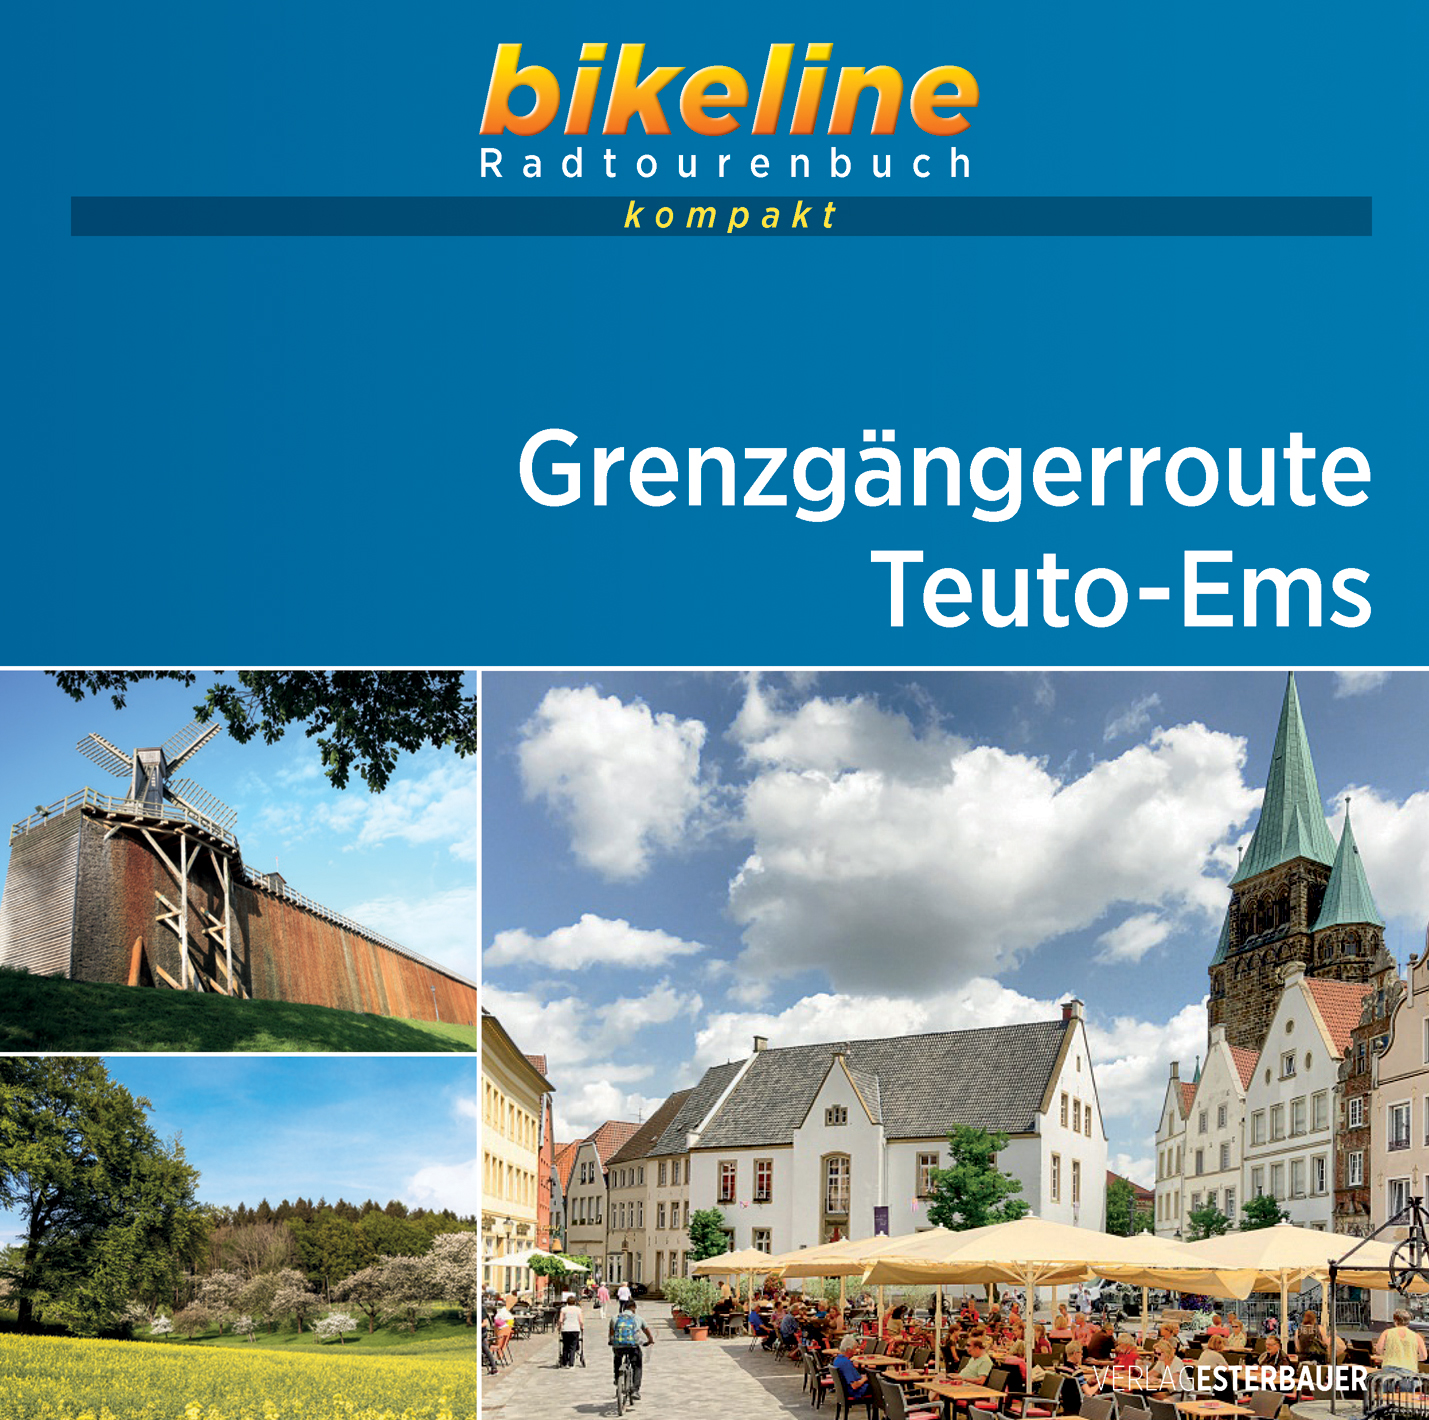 Online bestellen: Fietsgids Bikeline Radtourenbuch kompakt Grenzgängerroute Teuto-Ems | Esterbauer